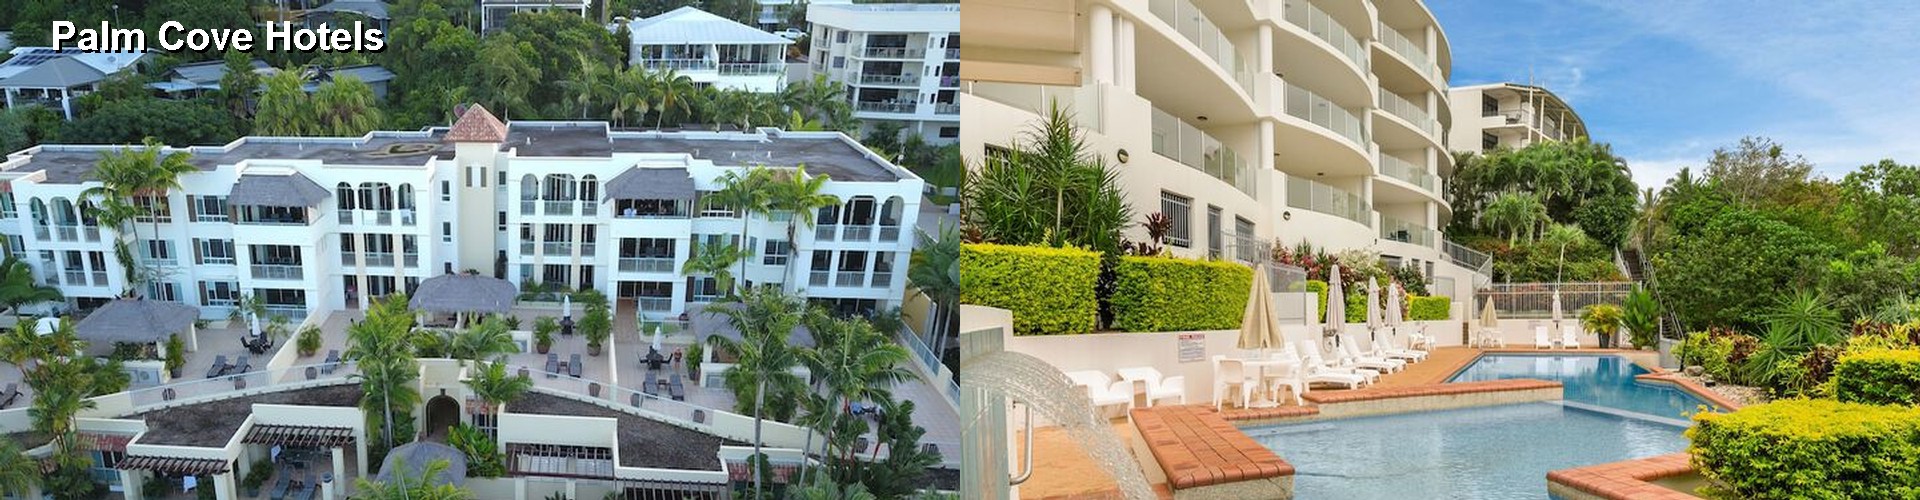 5 Best Hotels near Palm Cove